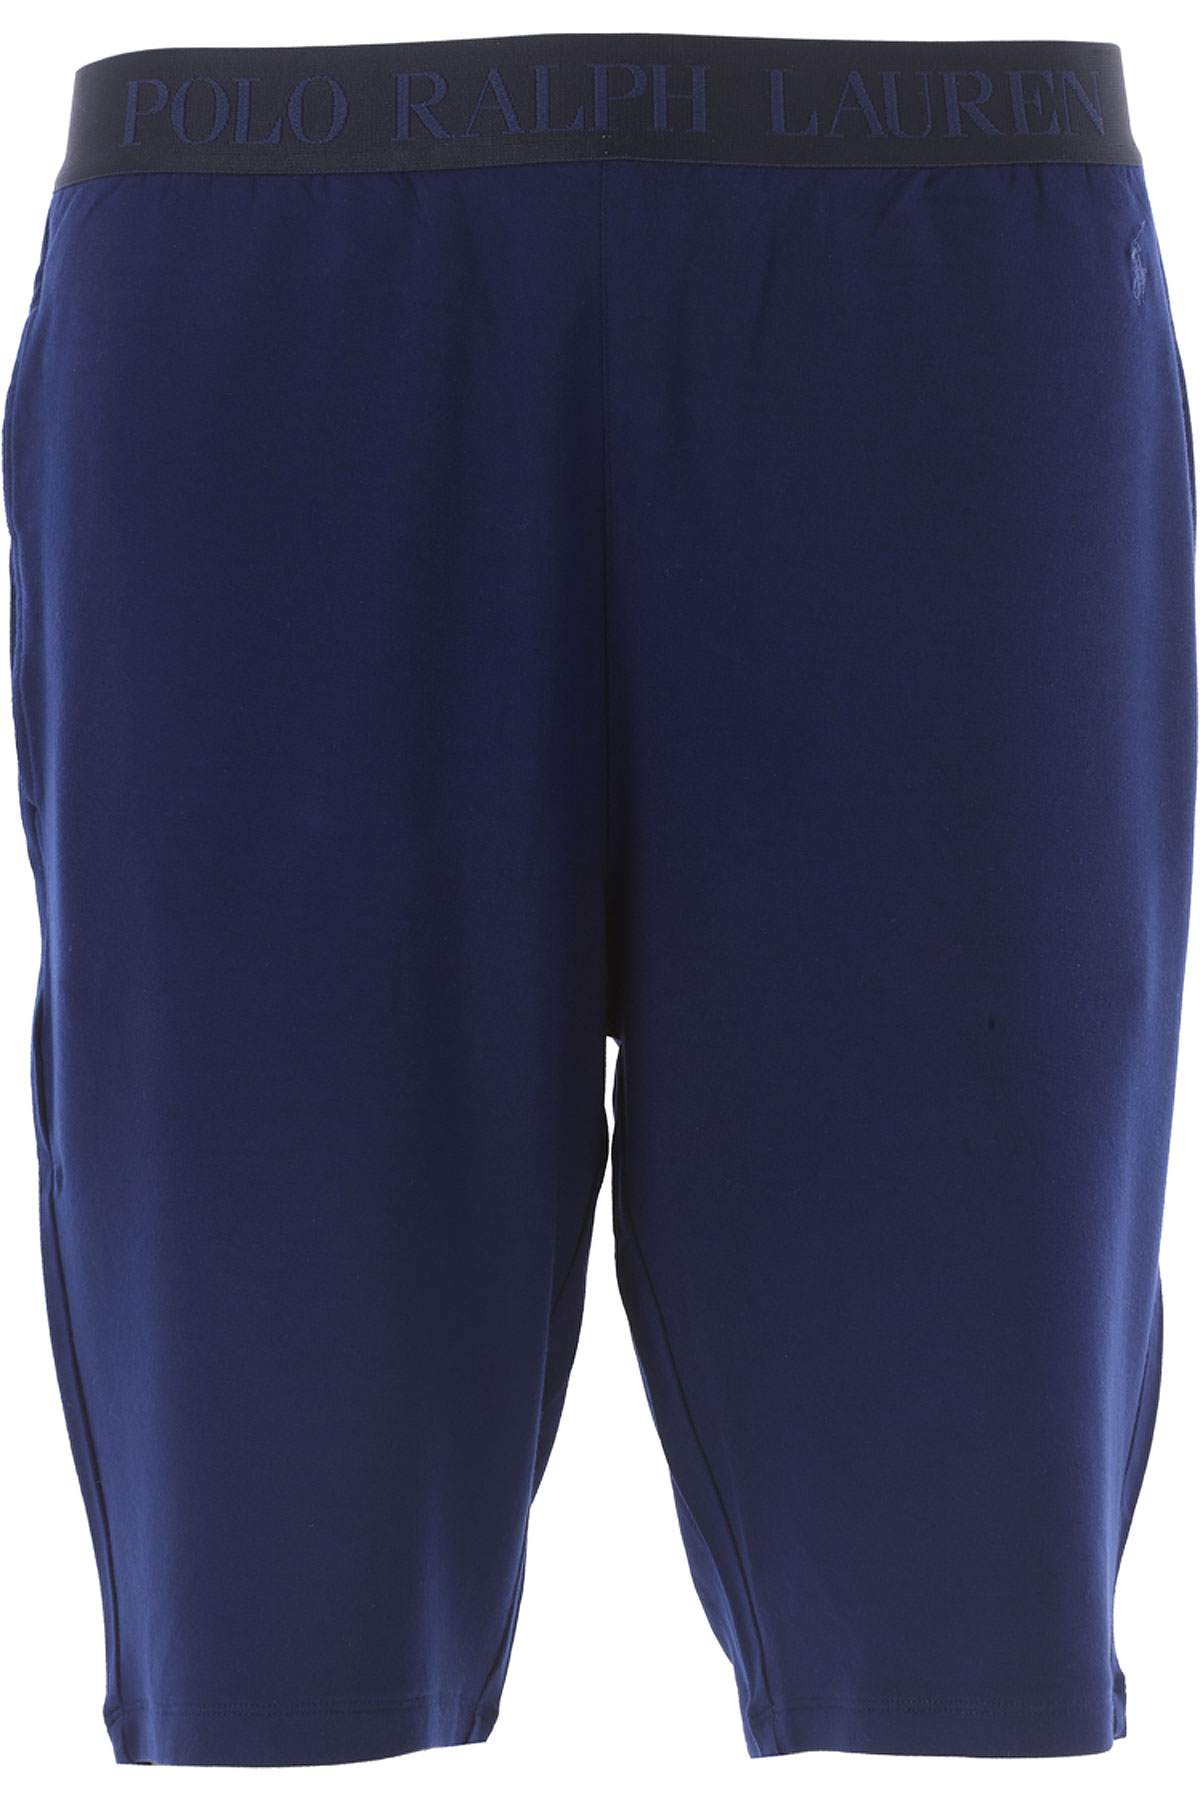 Ralph Lauren Pyjama Homme Outlet, Bleu électrique, Modal, 2017, M S